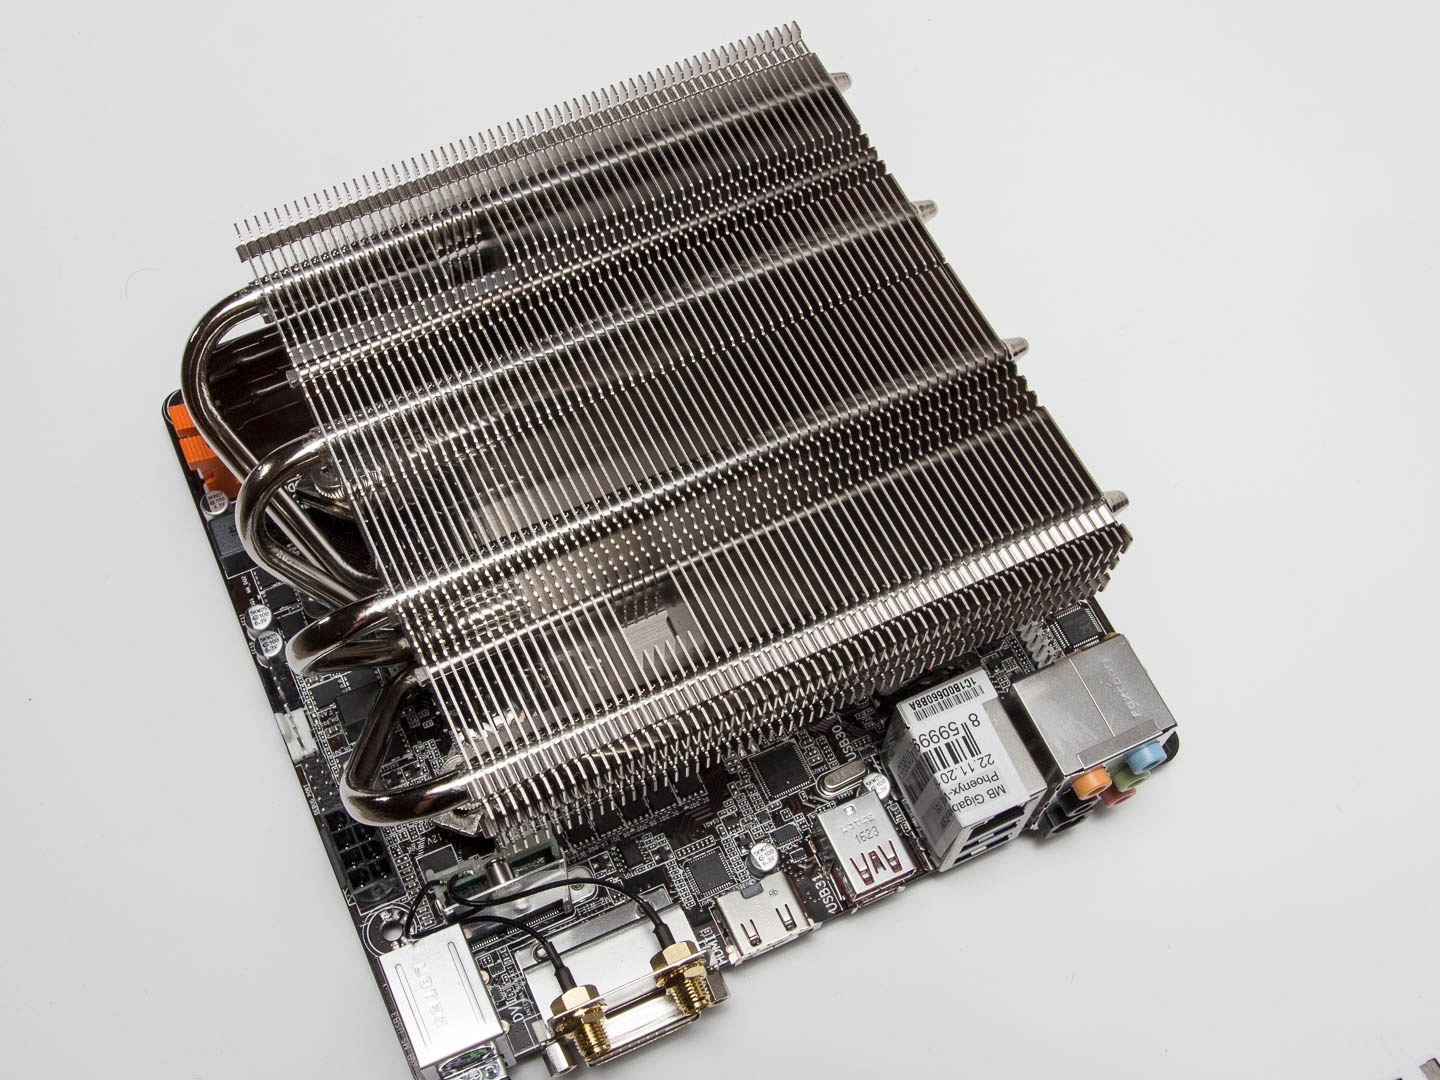 Chladiče pro HTPC: Když na procesor nastoupí těžká váha